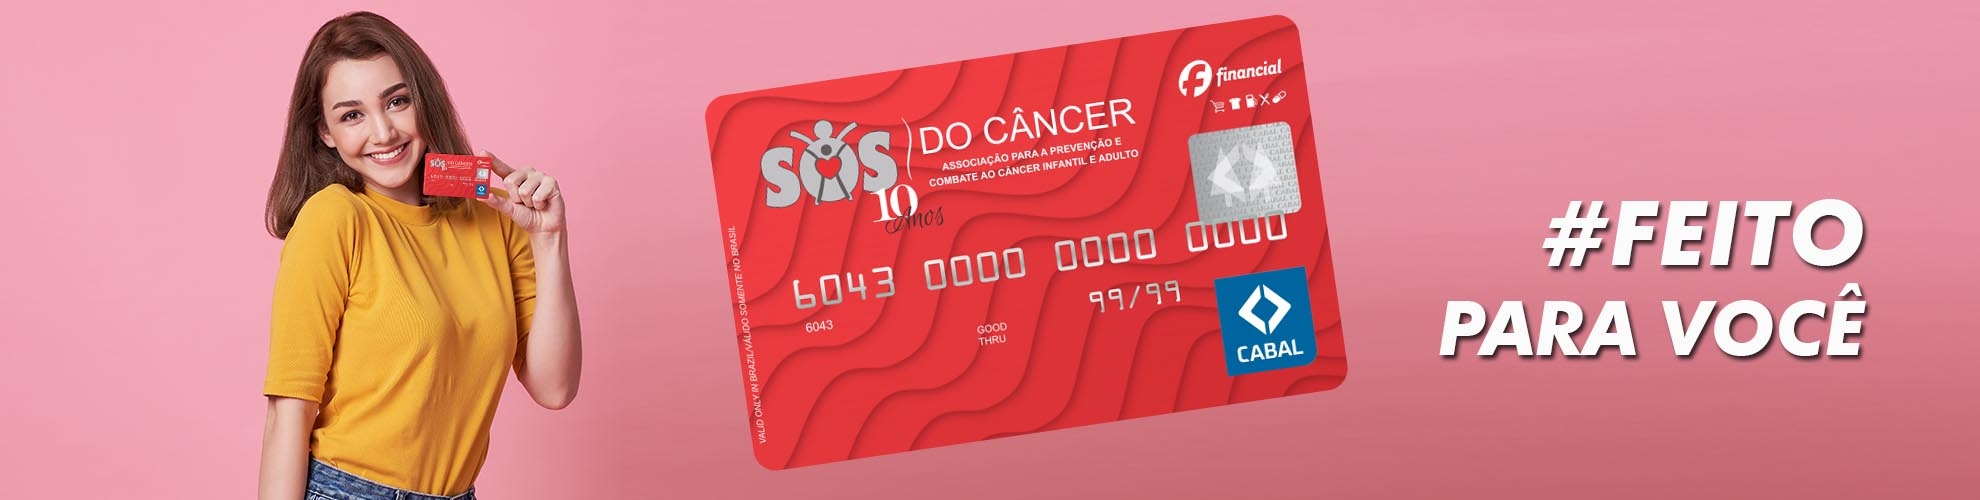 Cartão de Crédito SOS do Câncer